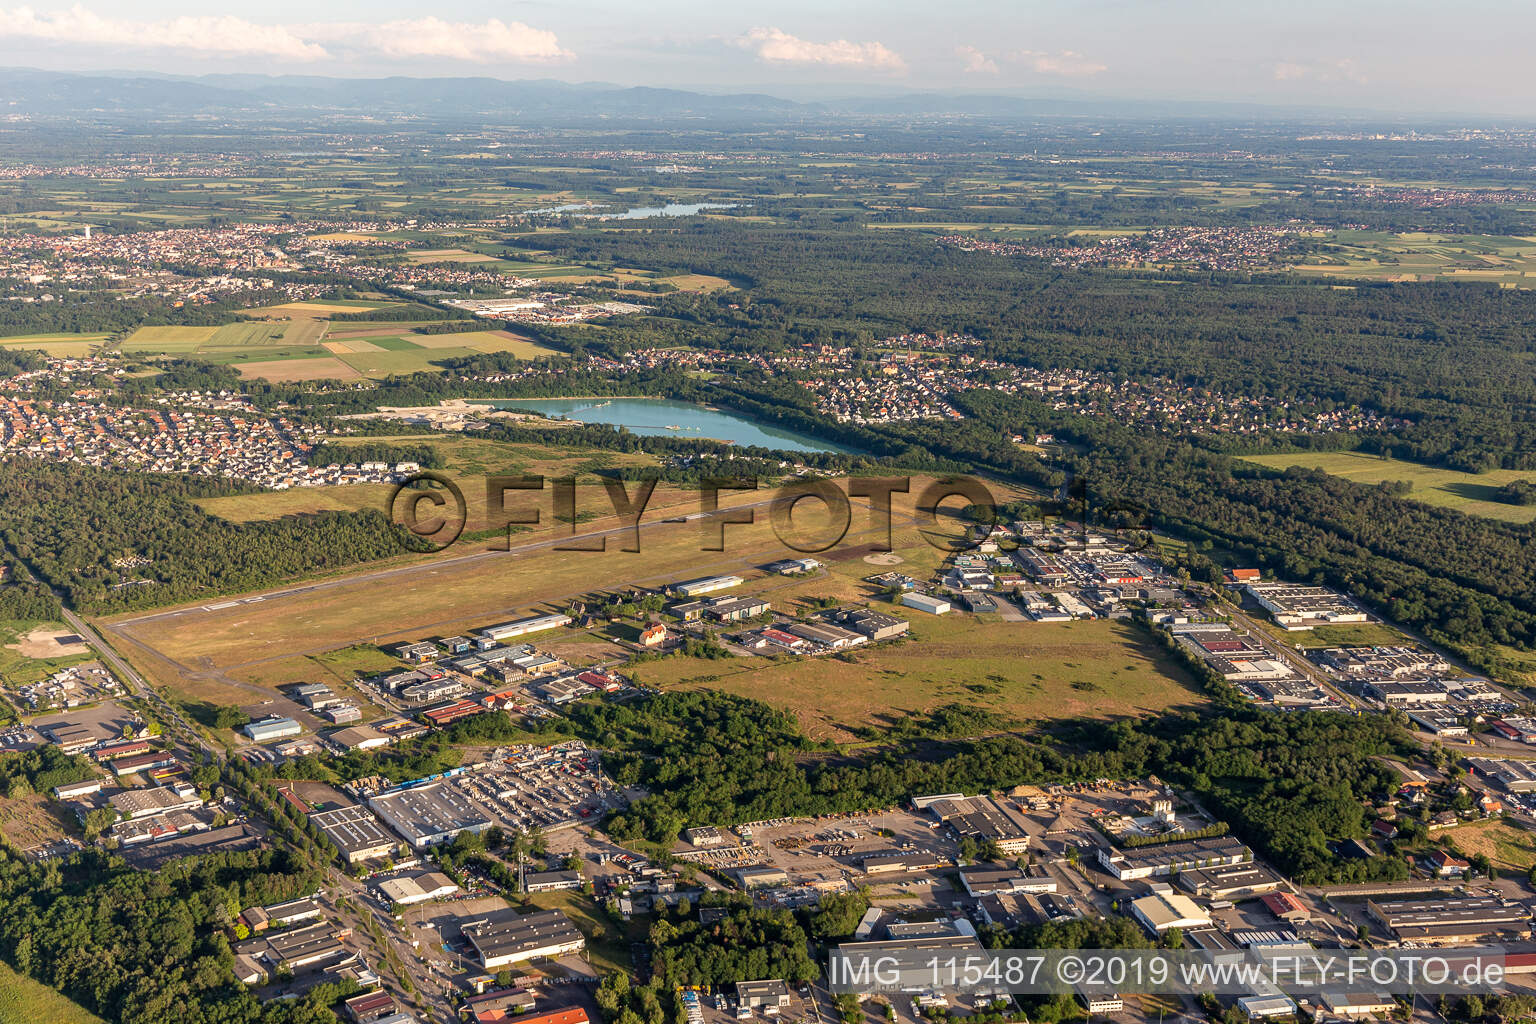 Luftbild von Aerodrome in Haguenau im Bundesland Bas-Rhin, Frankreich